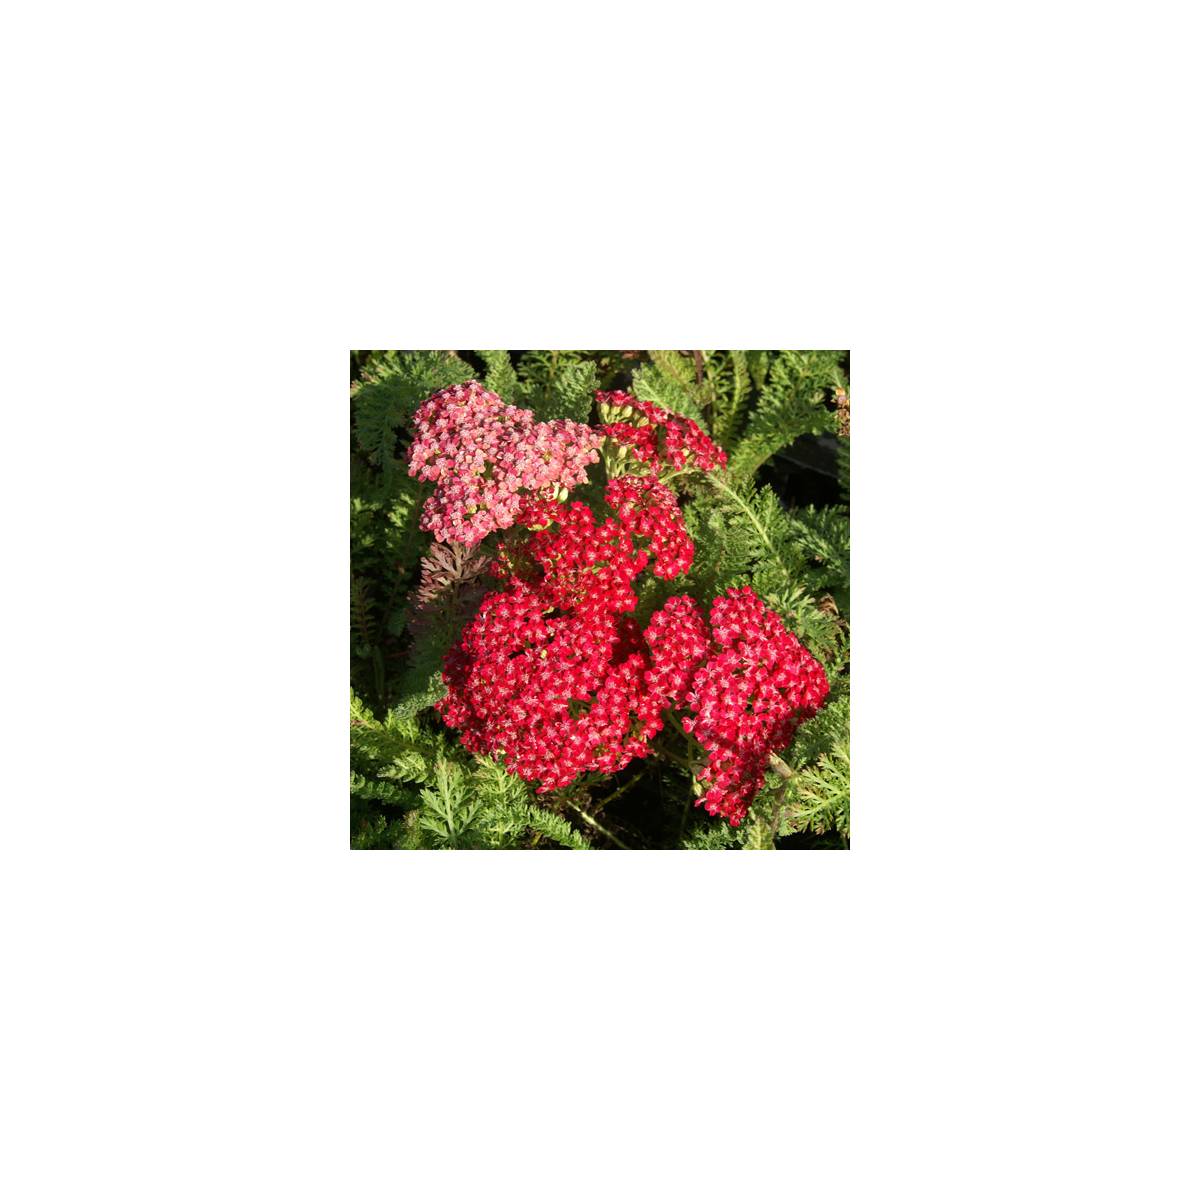 Achillée millefeuille red velvet/achillea millefolium 'red velvet'[-]lot de 5 godets